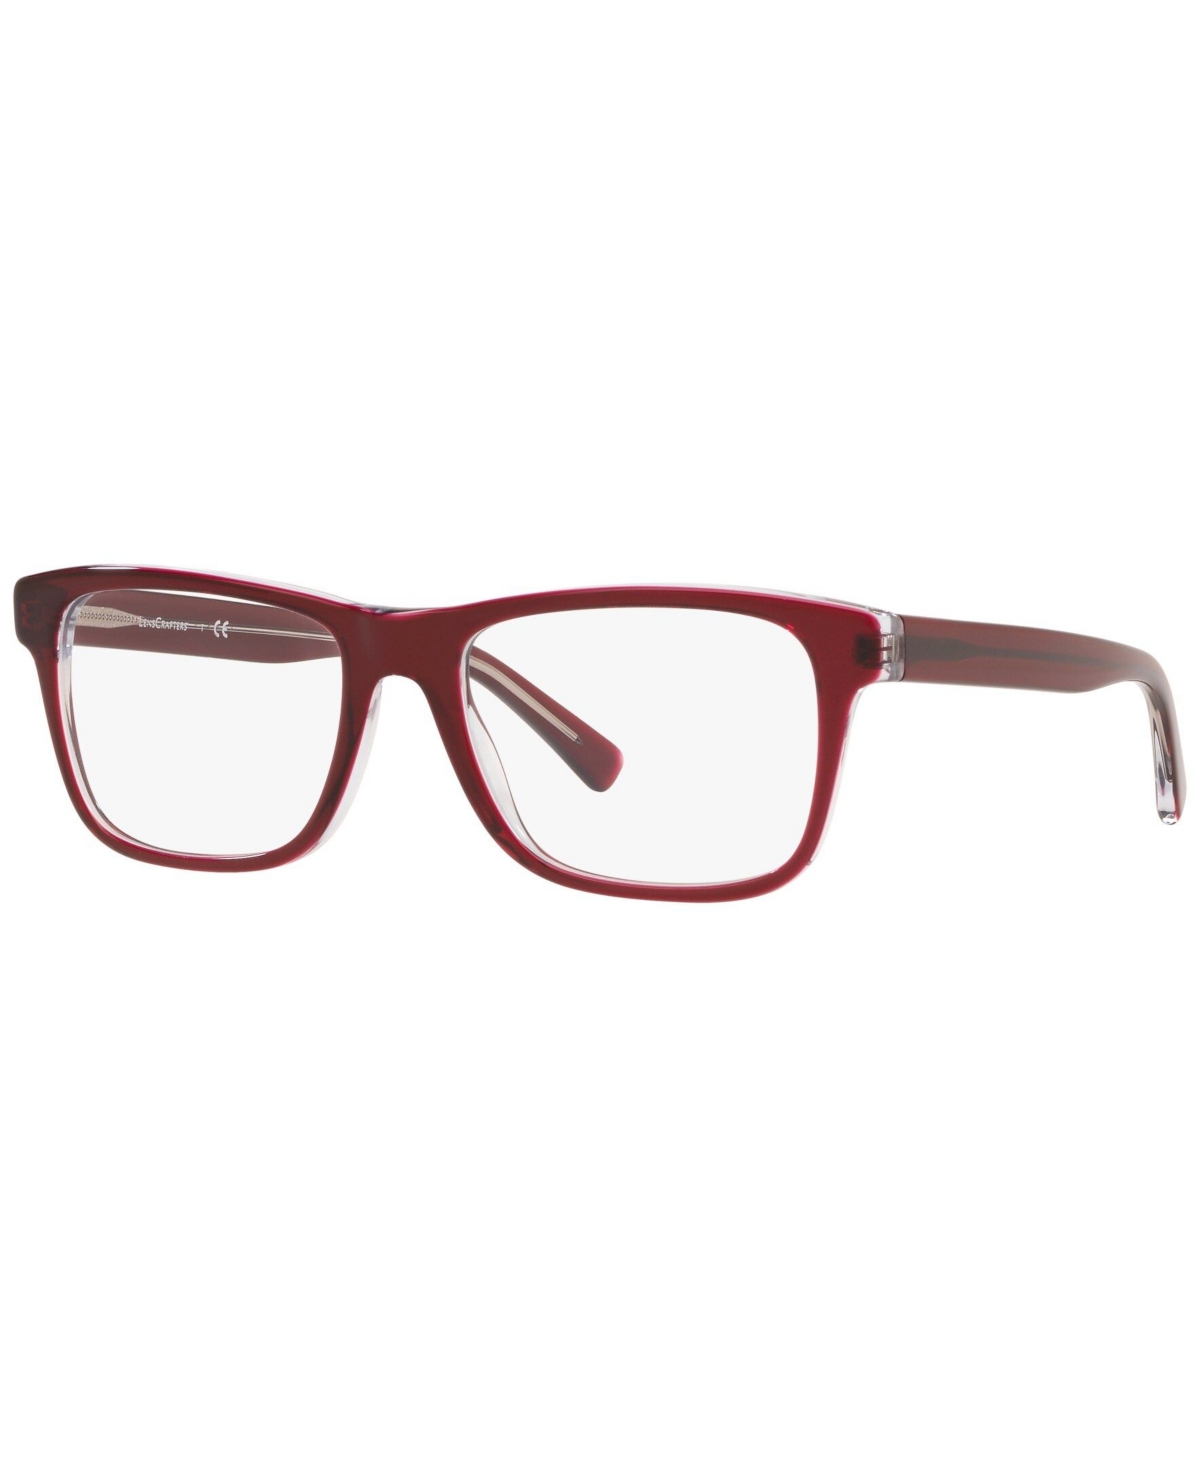 EC2002 Unisex Square Eyeglasses - Red